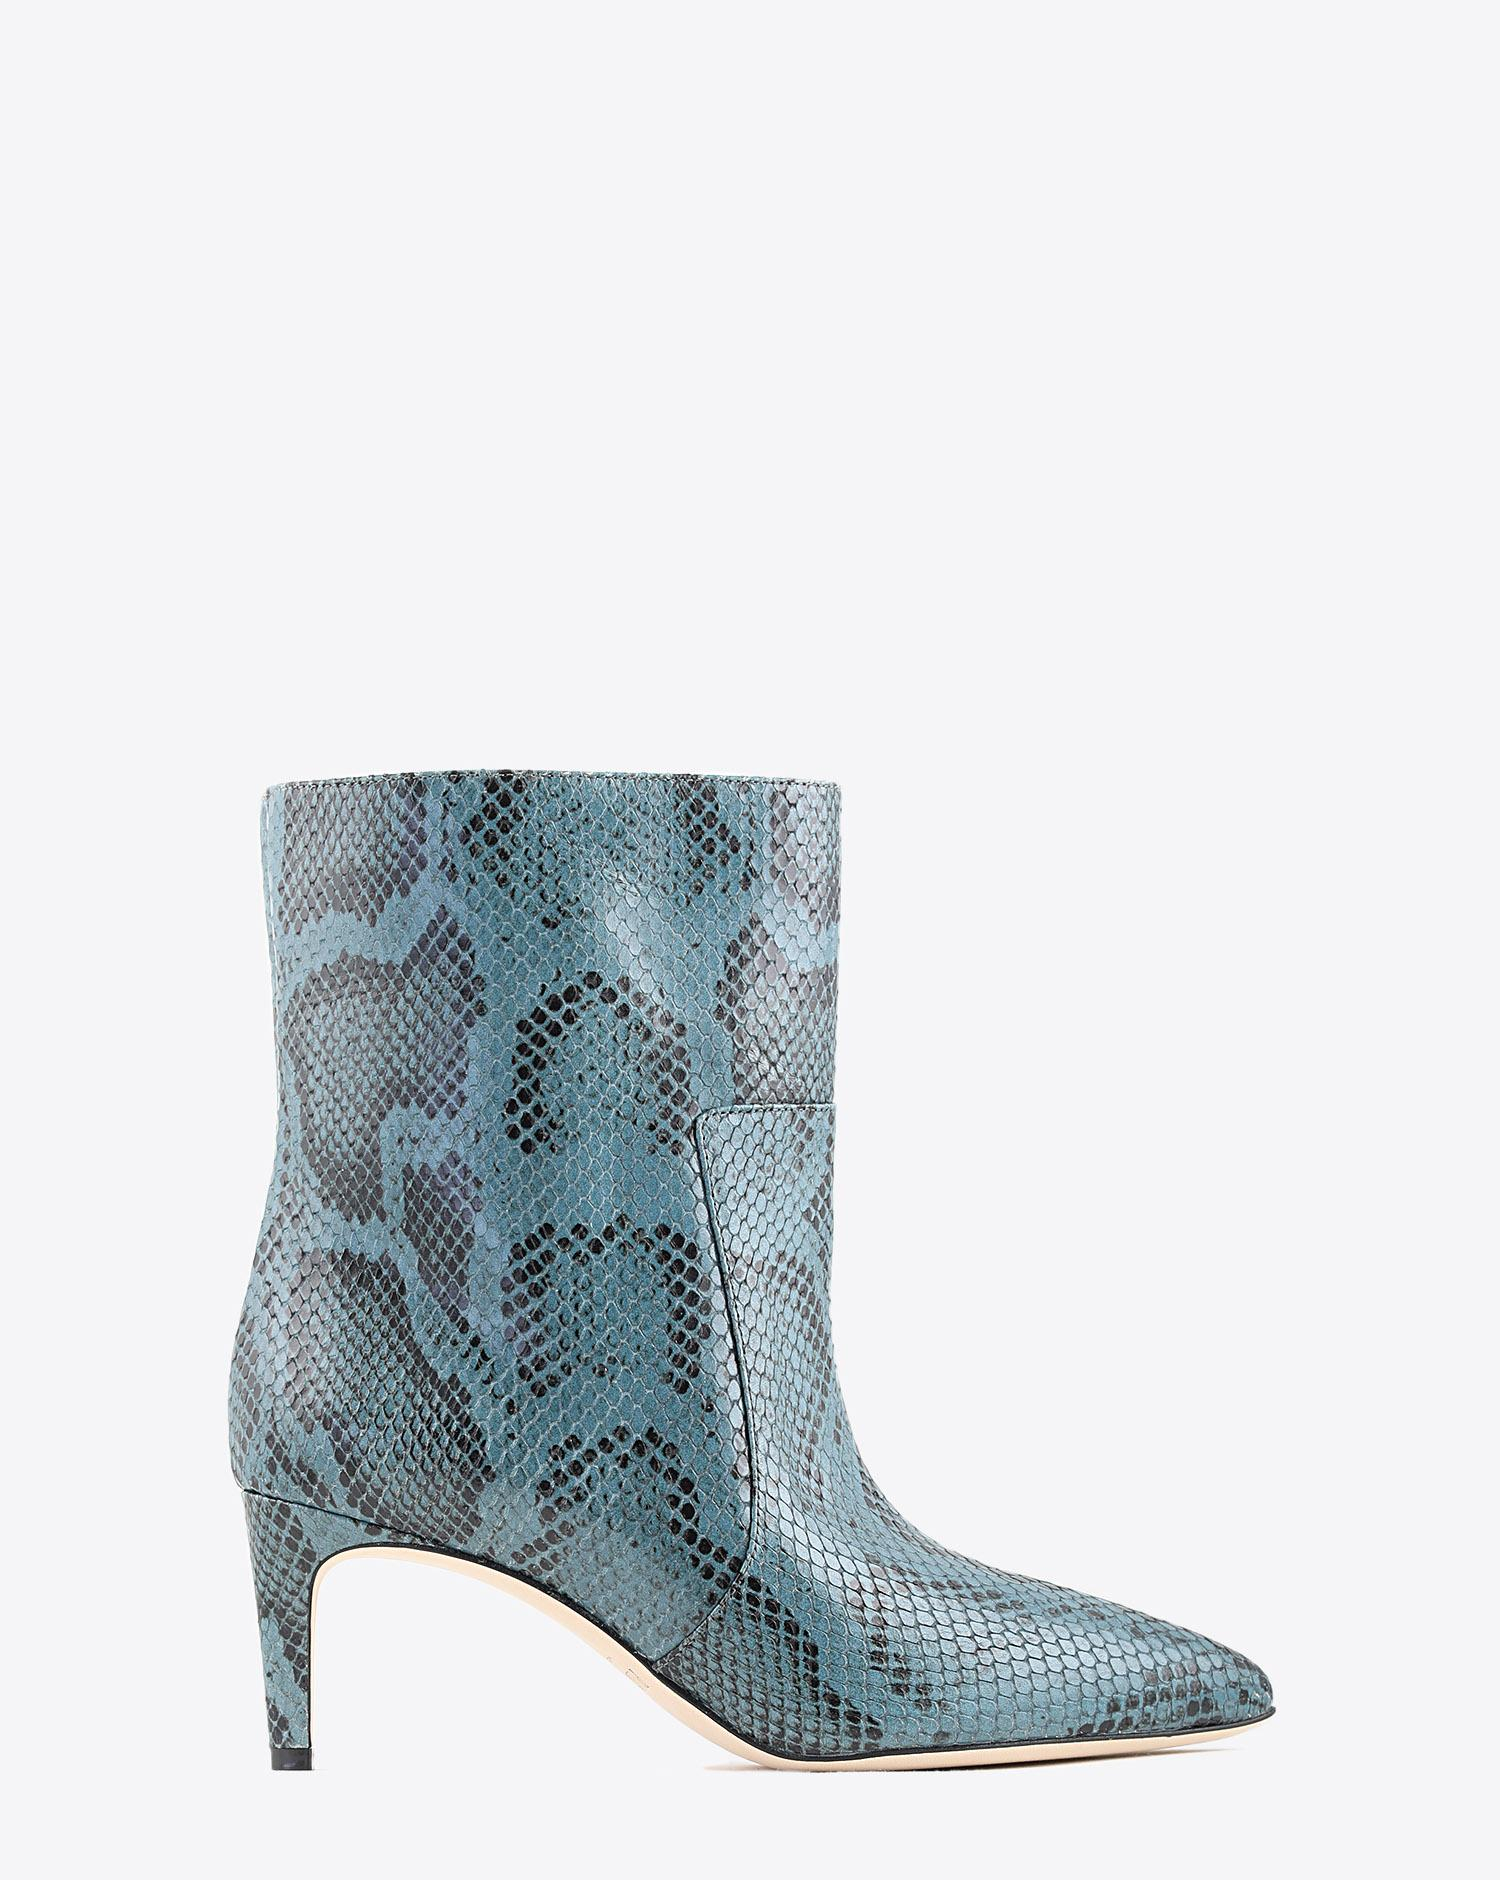 Paris Texas Pré-Collection Boots effet Serpent - Grigio Azzurro  